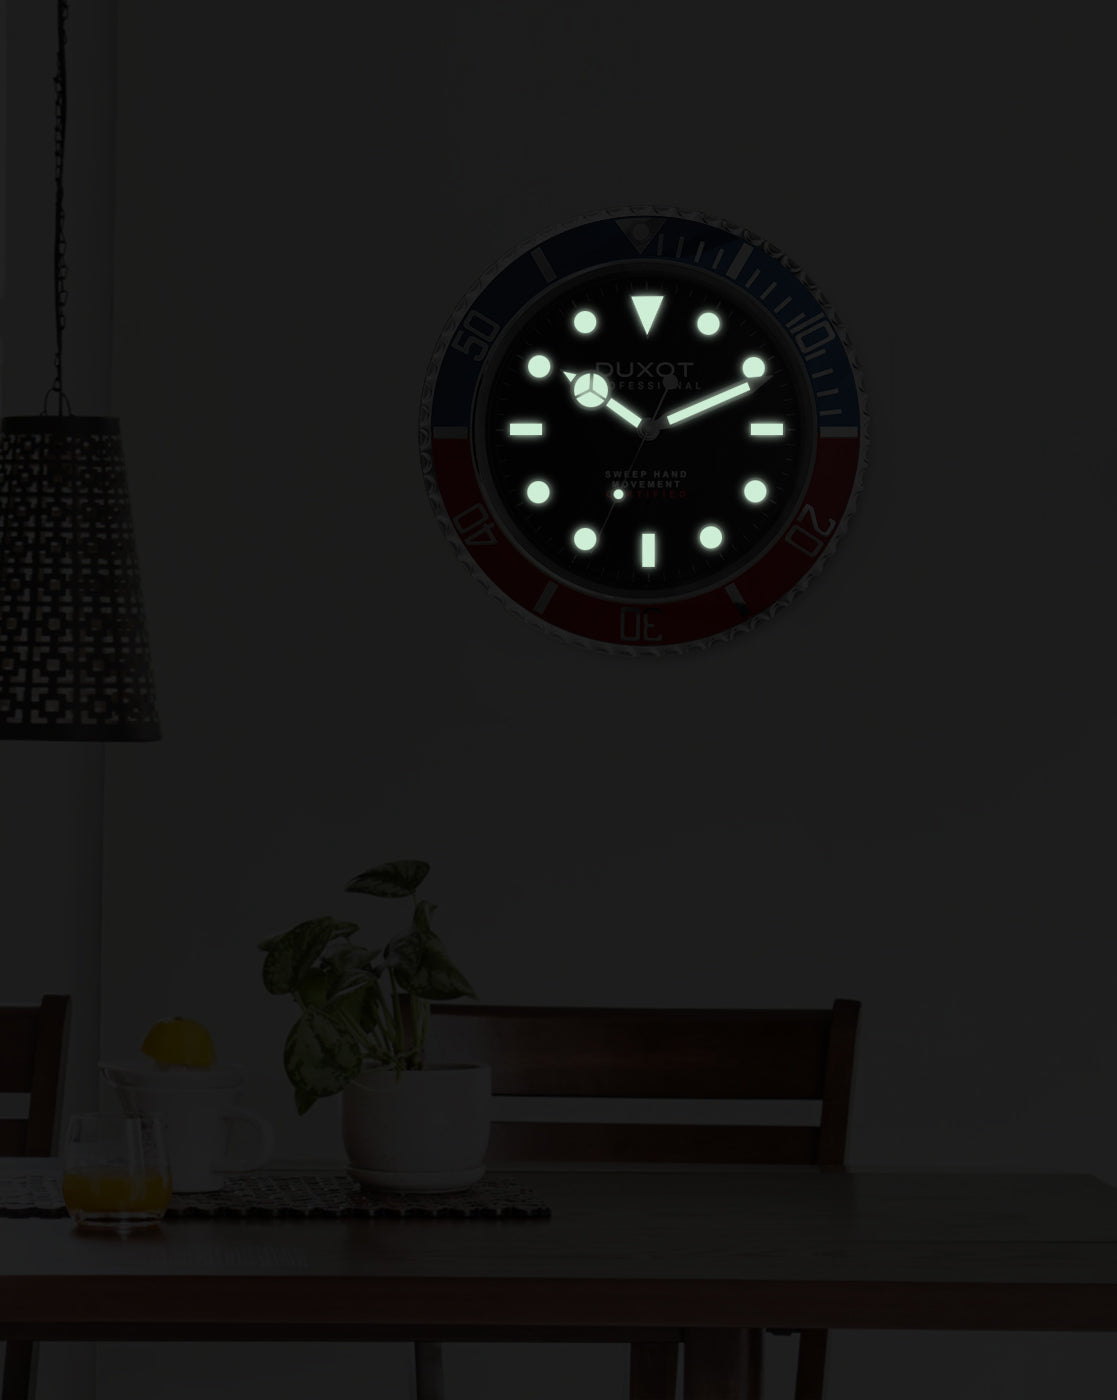 DUXOT Duxot Atlantica GMT Wall Clock DX-CLK-02